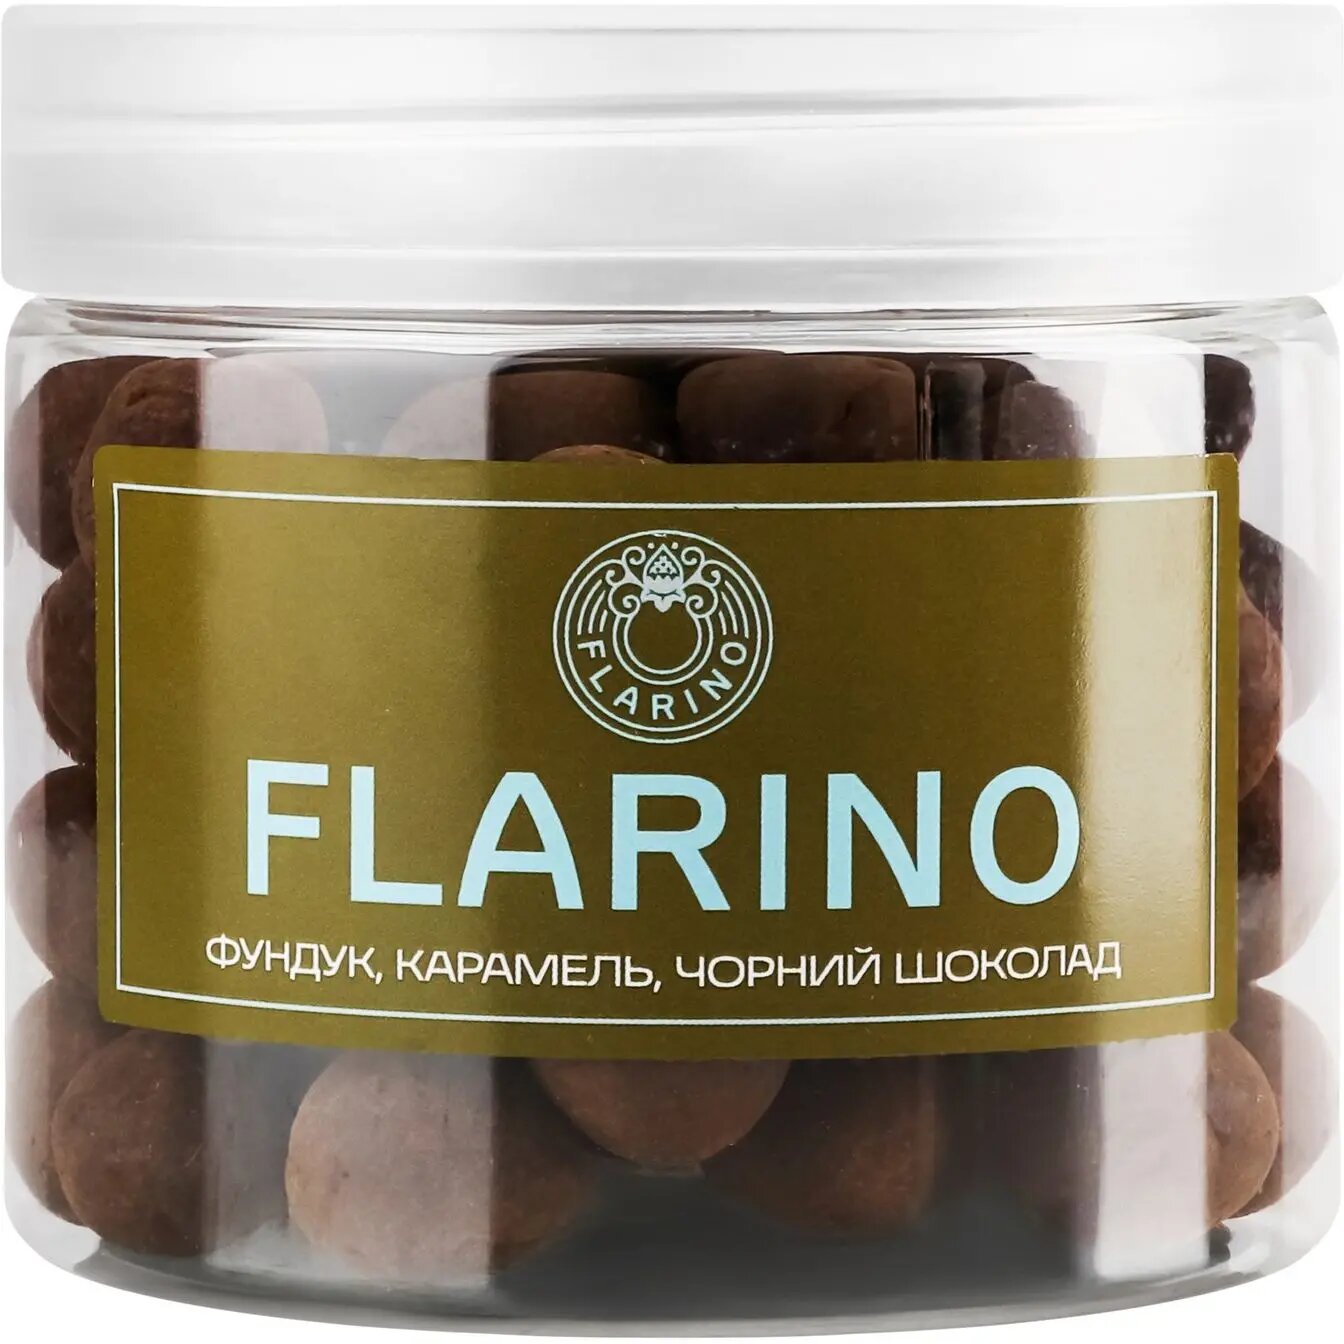 Фундук Flarino в карамели покрытый черным шоколадом 180 г (924021) - фото 1